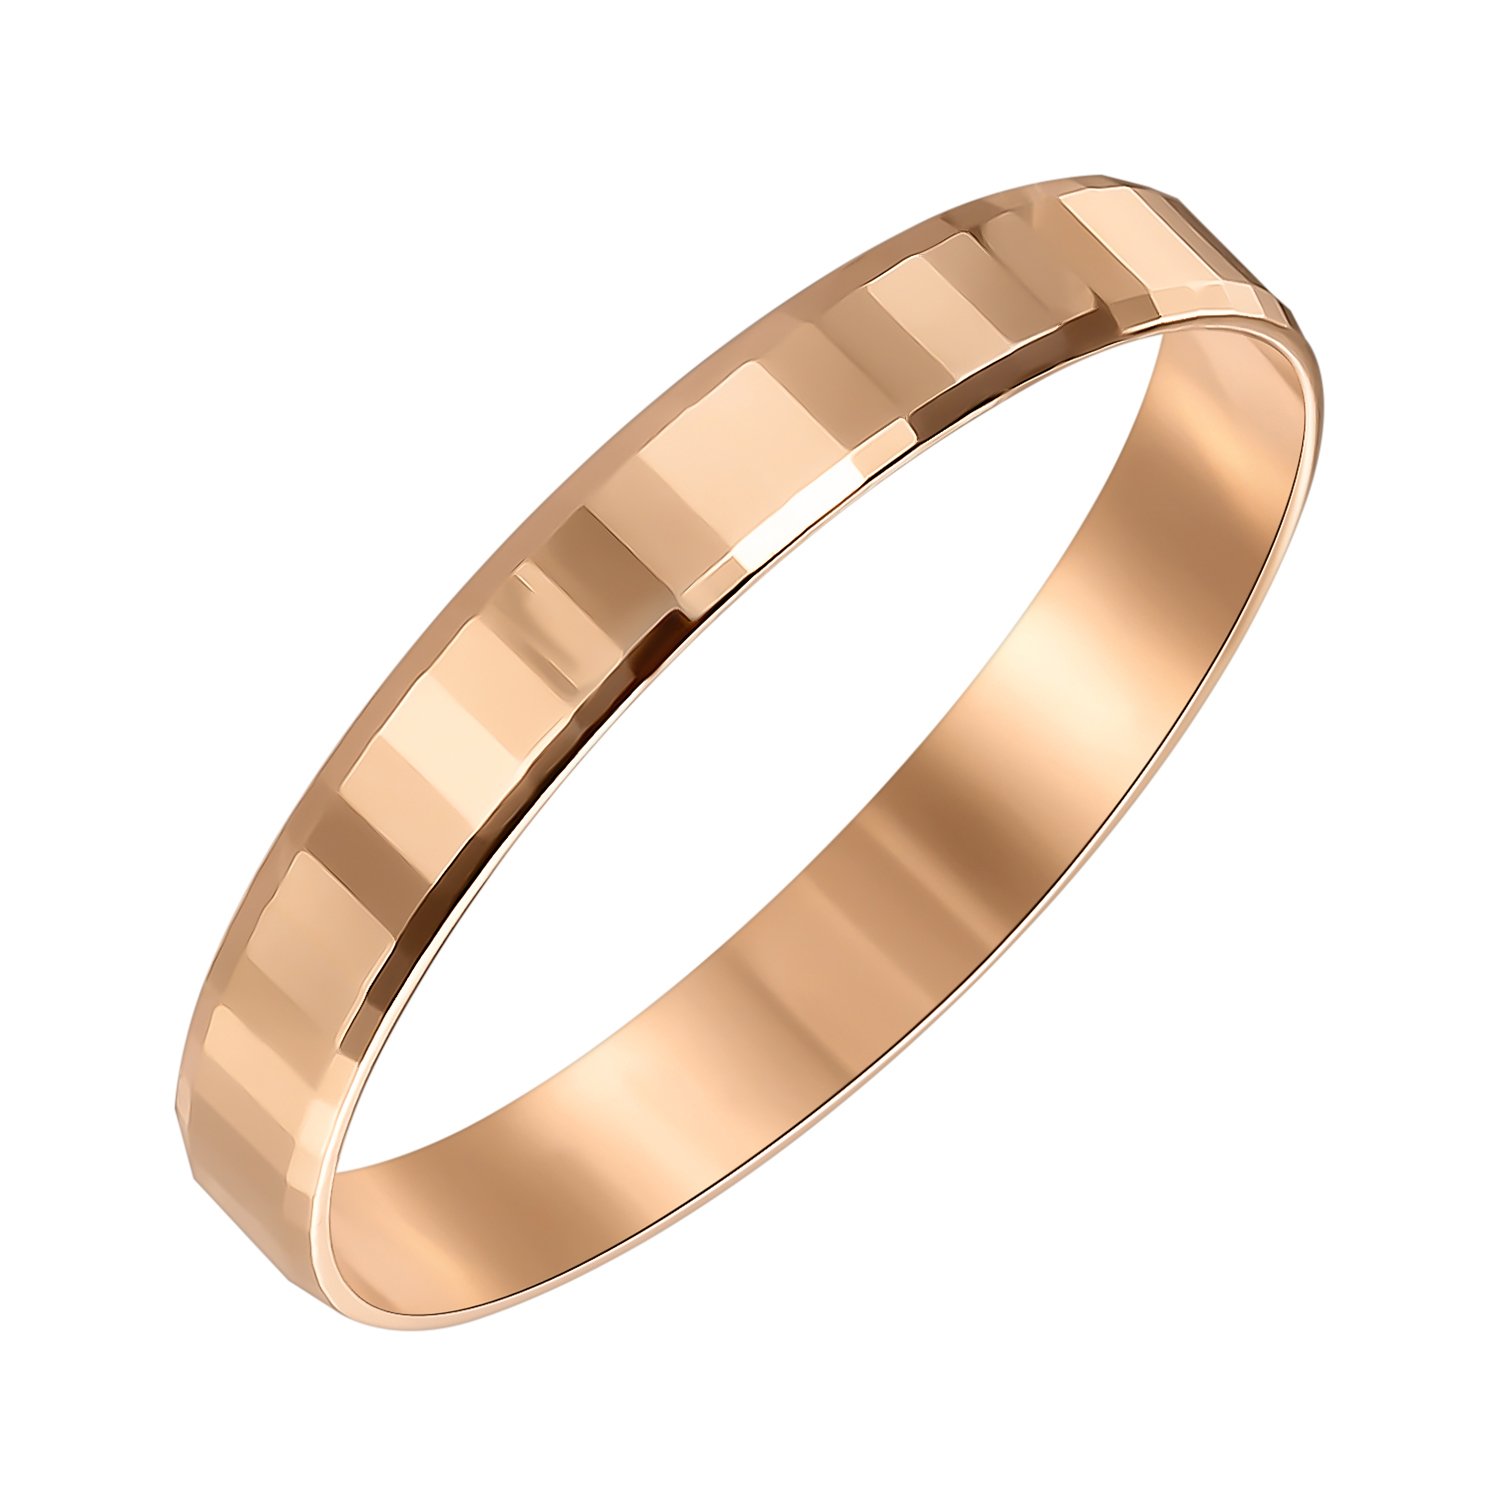 Европейские золотые кольца. SOKOLOV кольцо из золота с алмазной гранью 017342. 585 Золотой обручальные кольца. Кольцо обручальное золотое кольцо 585. Алмазная огранка золота кольца.